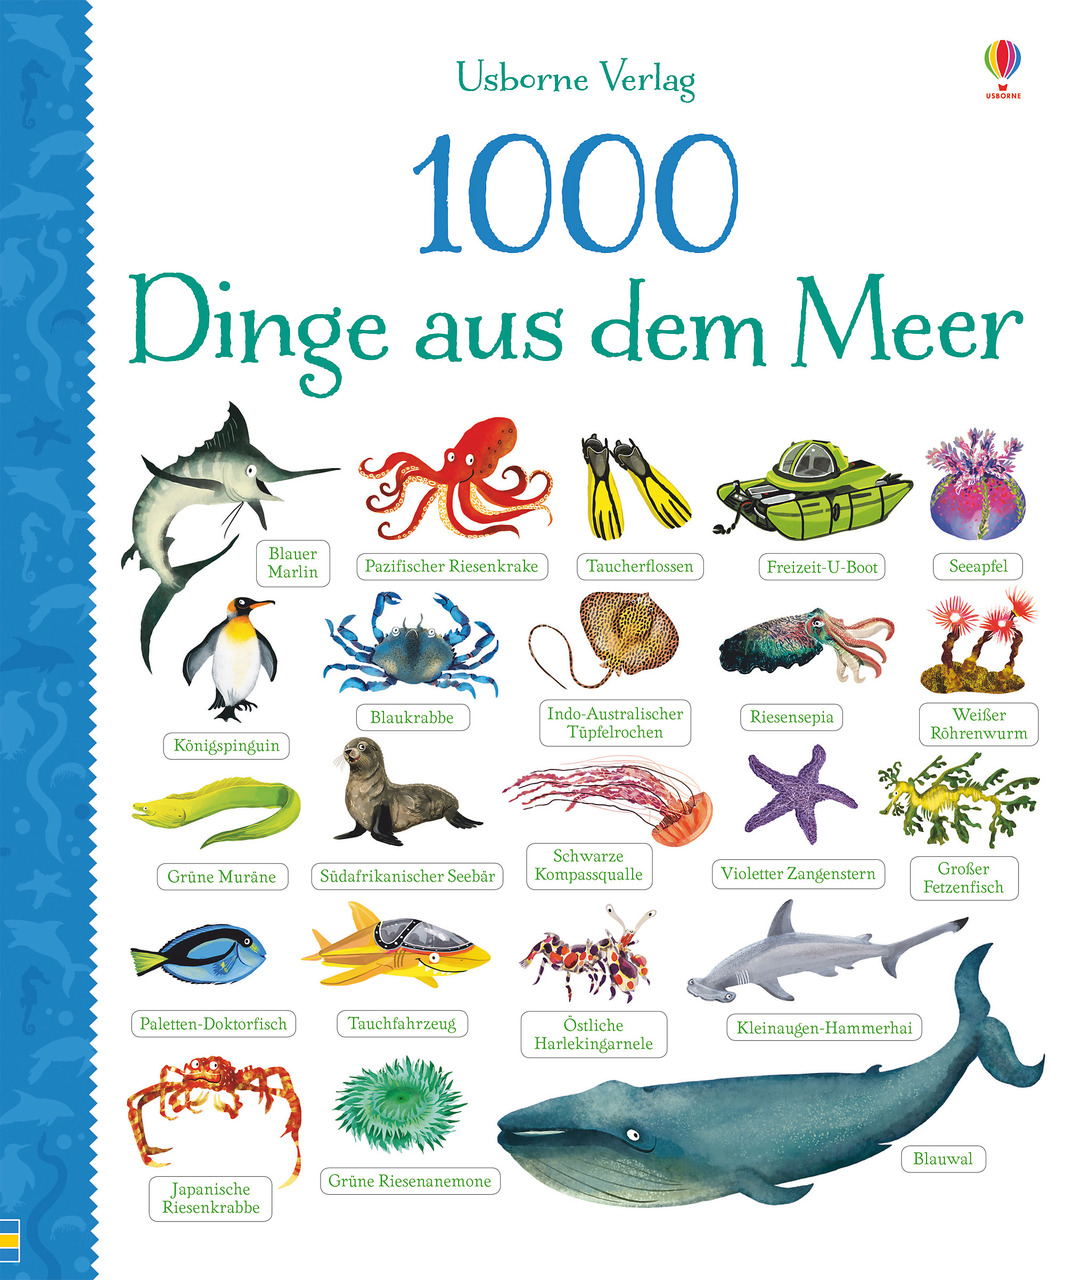 Usborne Verlag Ich weiß jetzt 100 Dinge mehr! Abenteuer